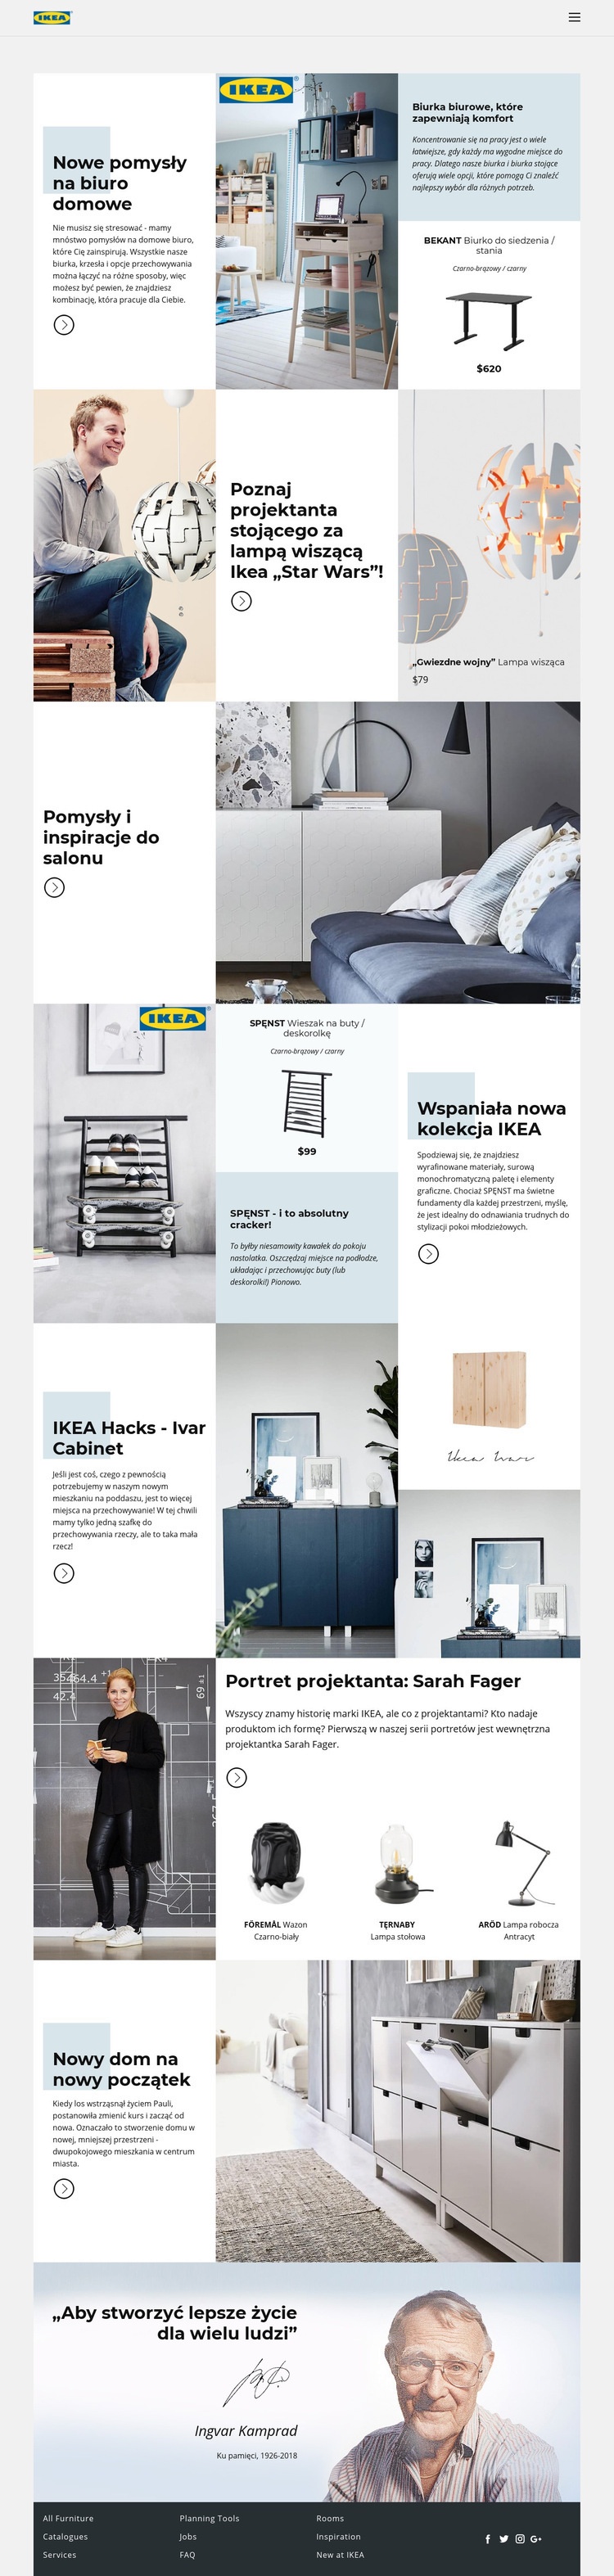 Inspiracja z IKEA Szablon HTML5